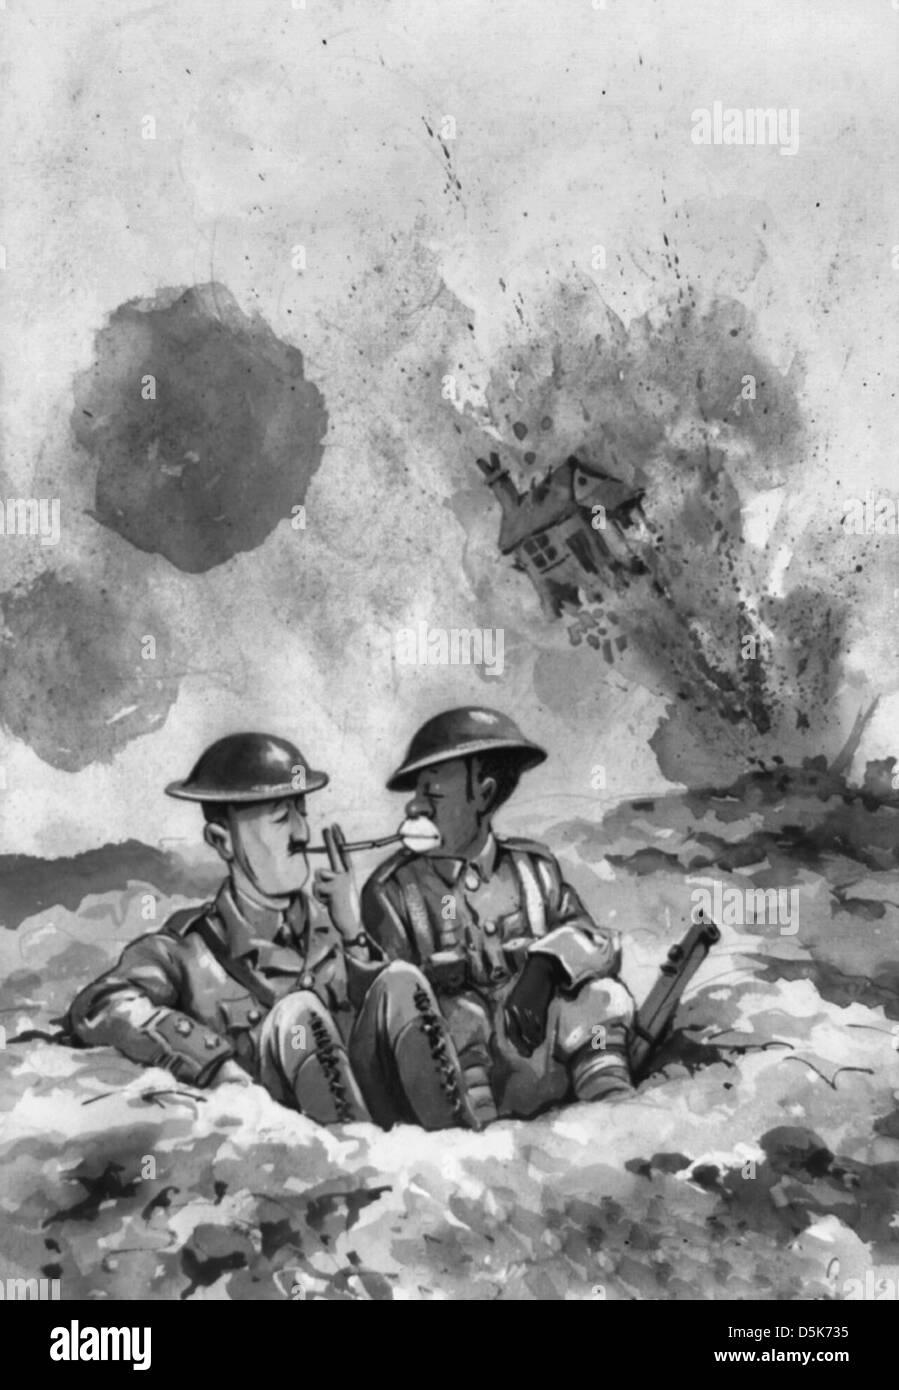 La crescita della democrazia - Nel mezzo di una battaglia di artiglieria volanti, due soldati dell'esercito britannico, uno bianco e nero nell'altro, sedersi in una trincea di accendere sigarette. In lontananza una casa esplode. Foto Stock